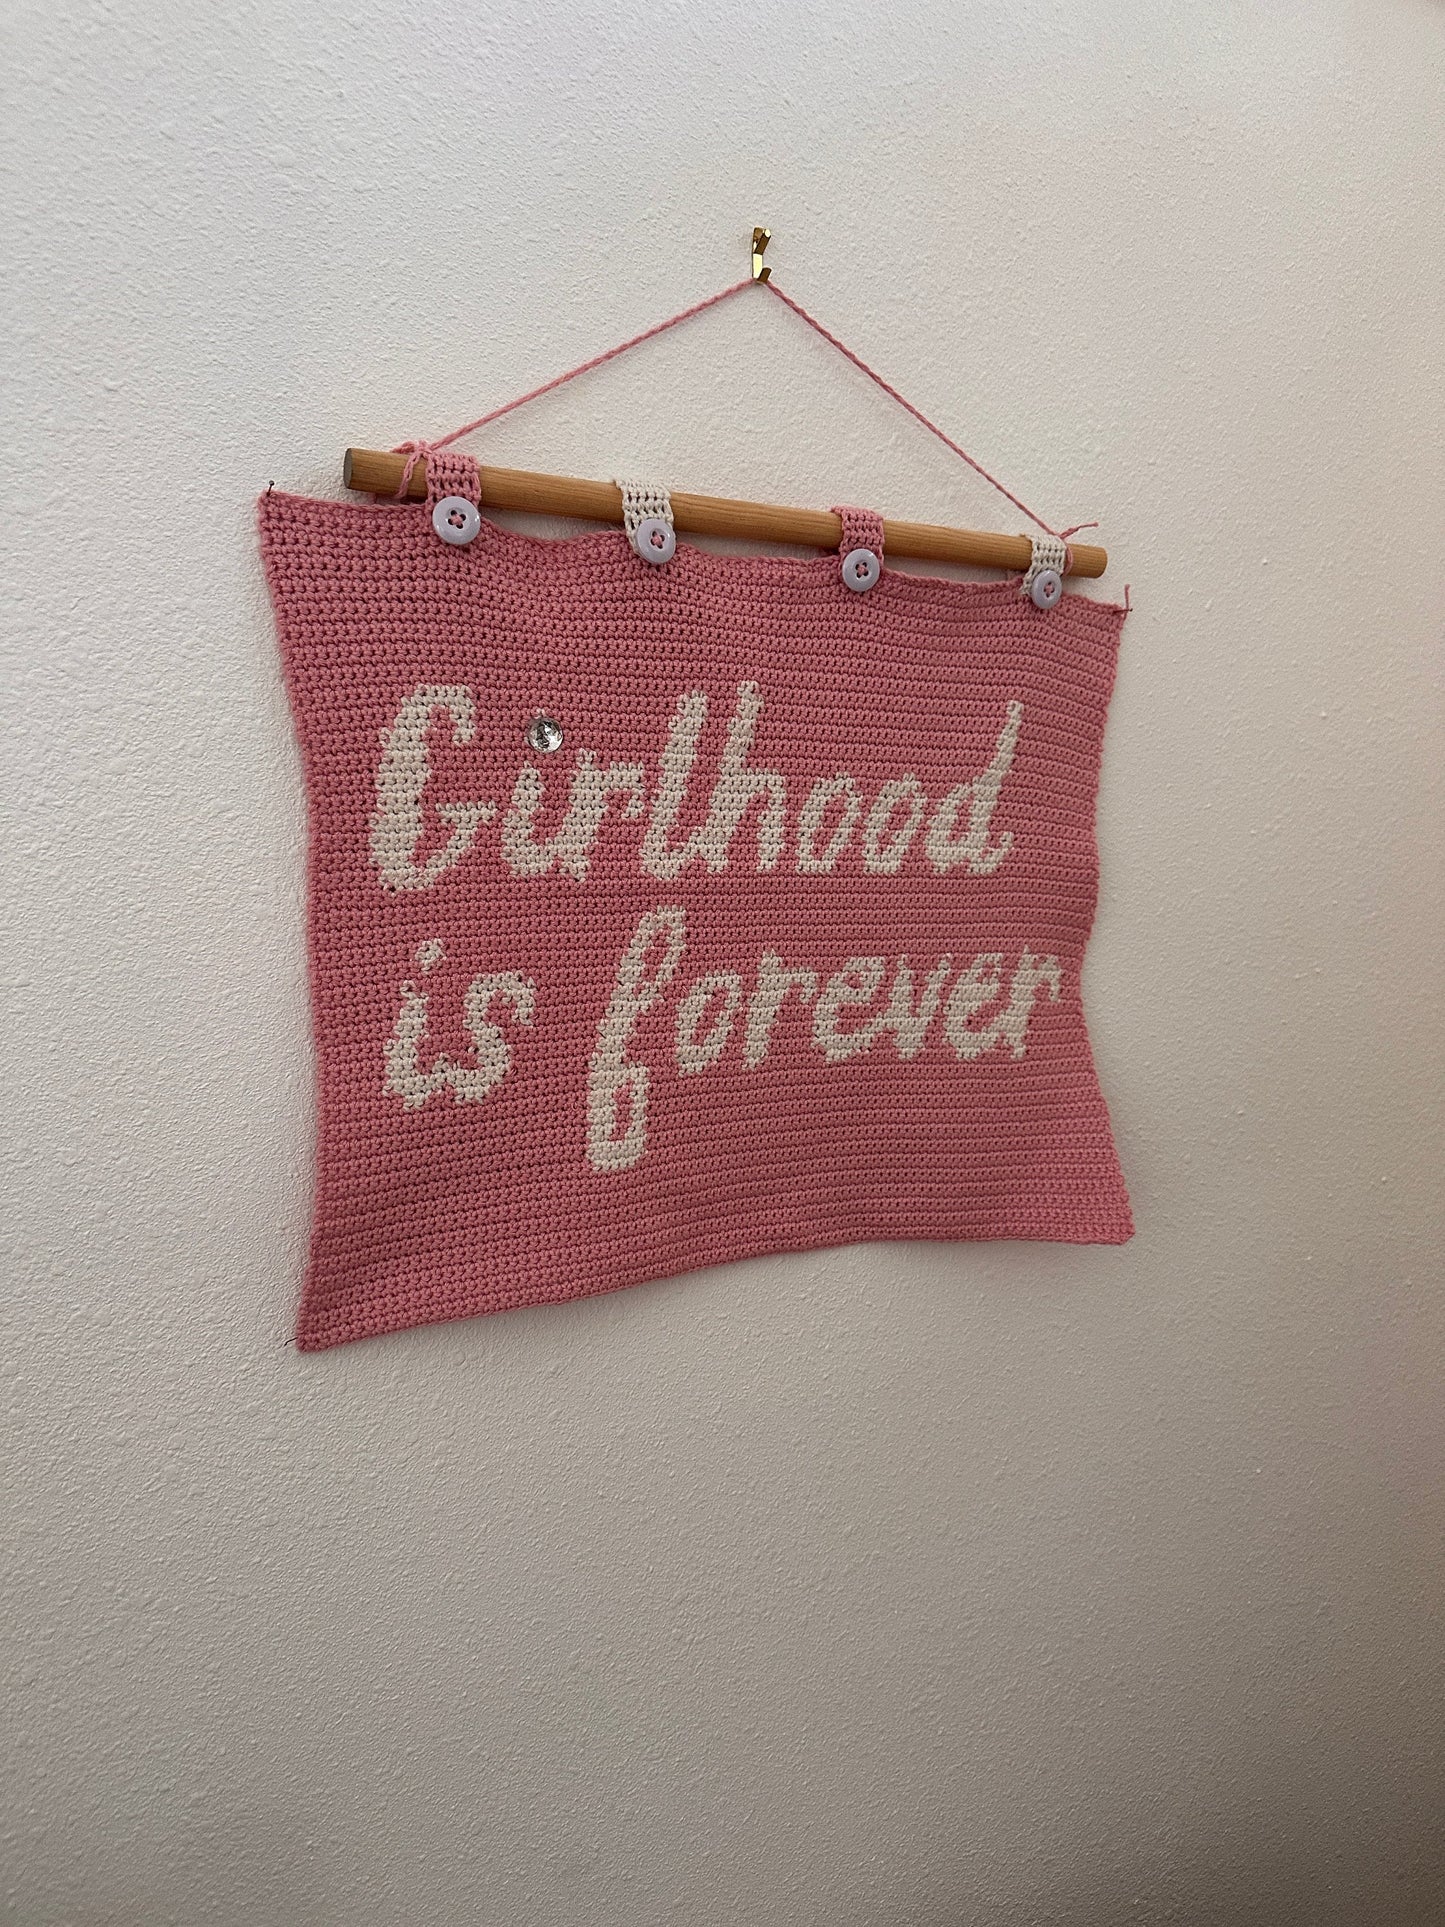 CROCHET PATTERN- Girlhood Is Forever Crochet Wall Tapestry